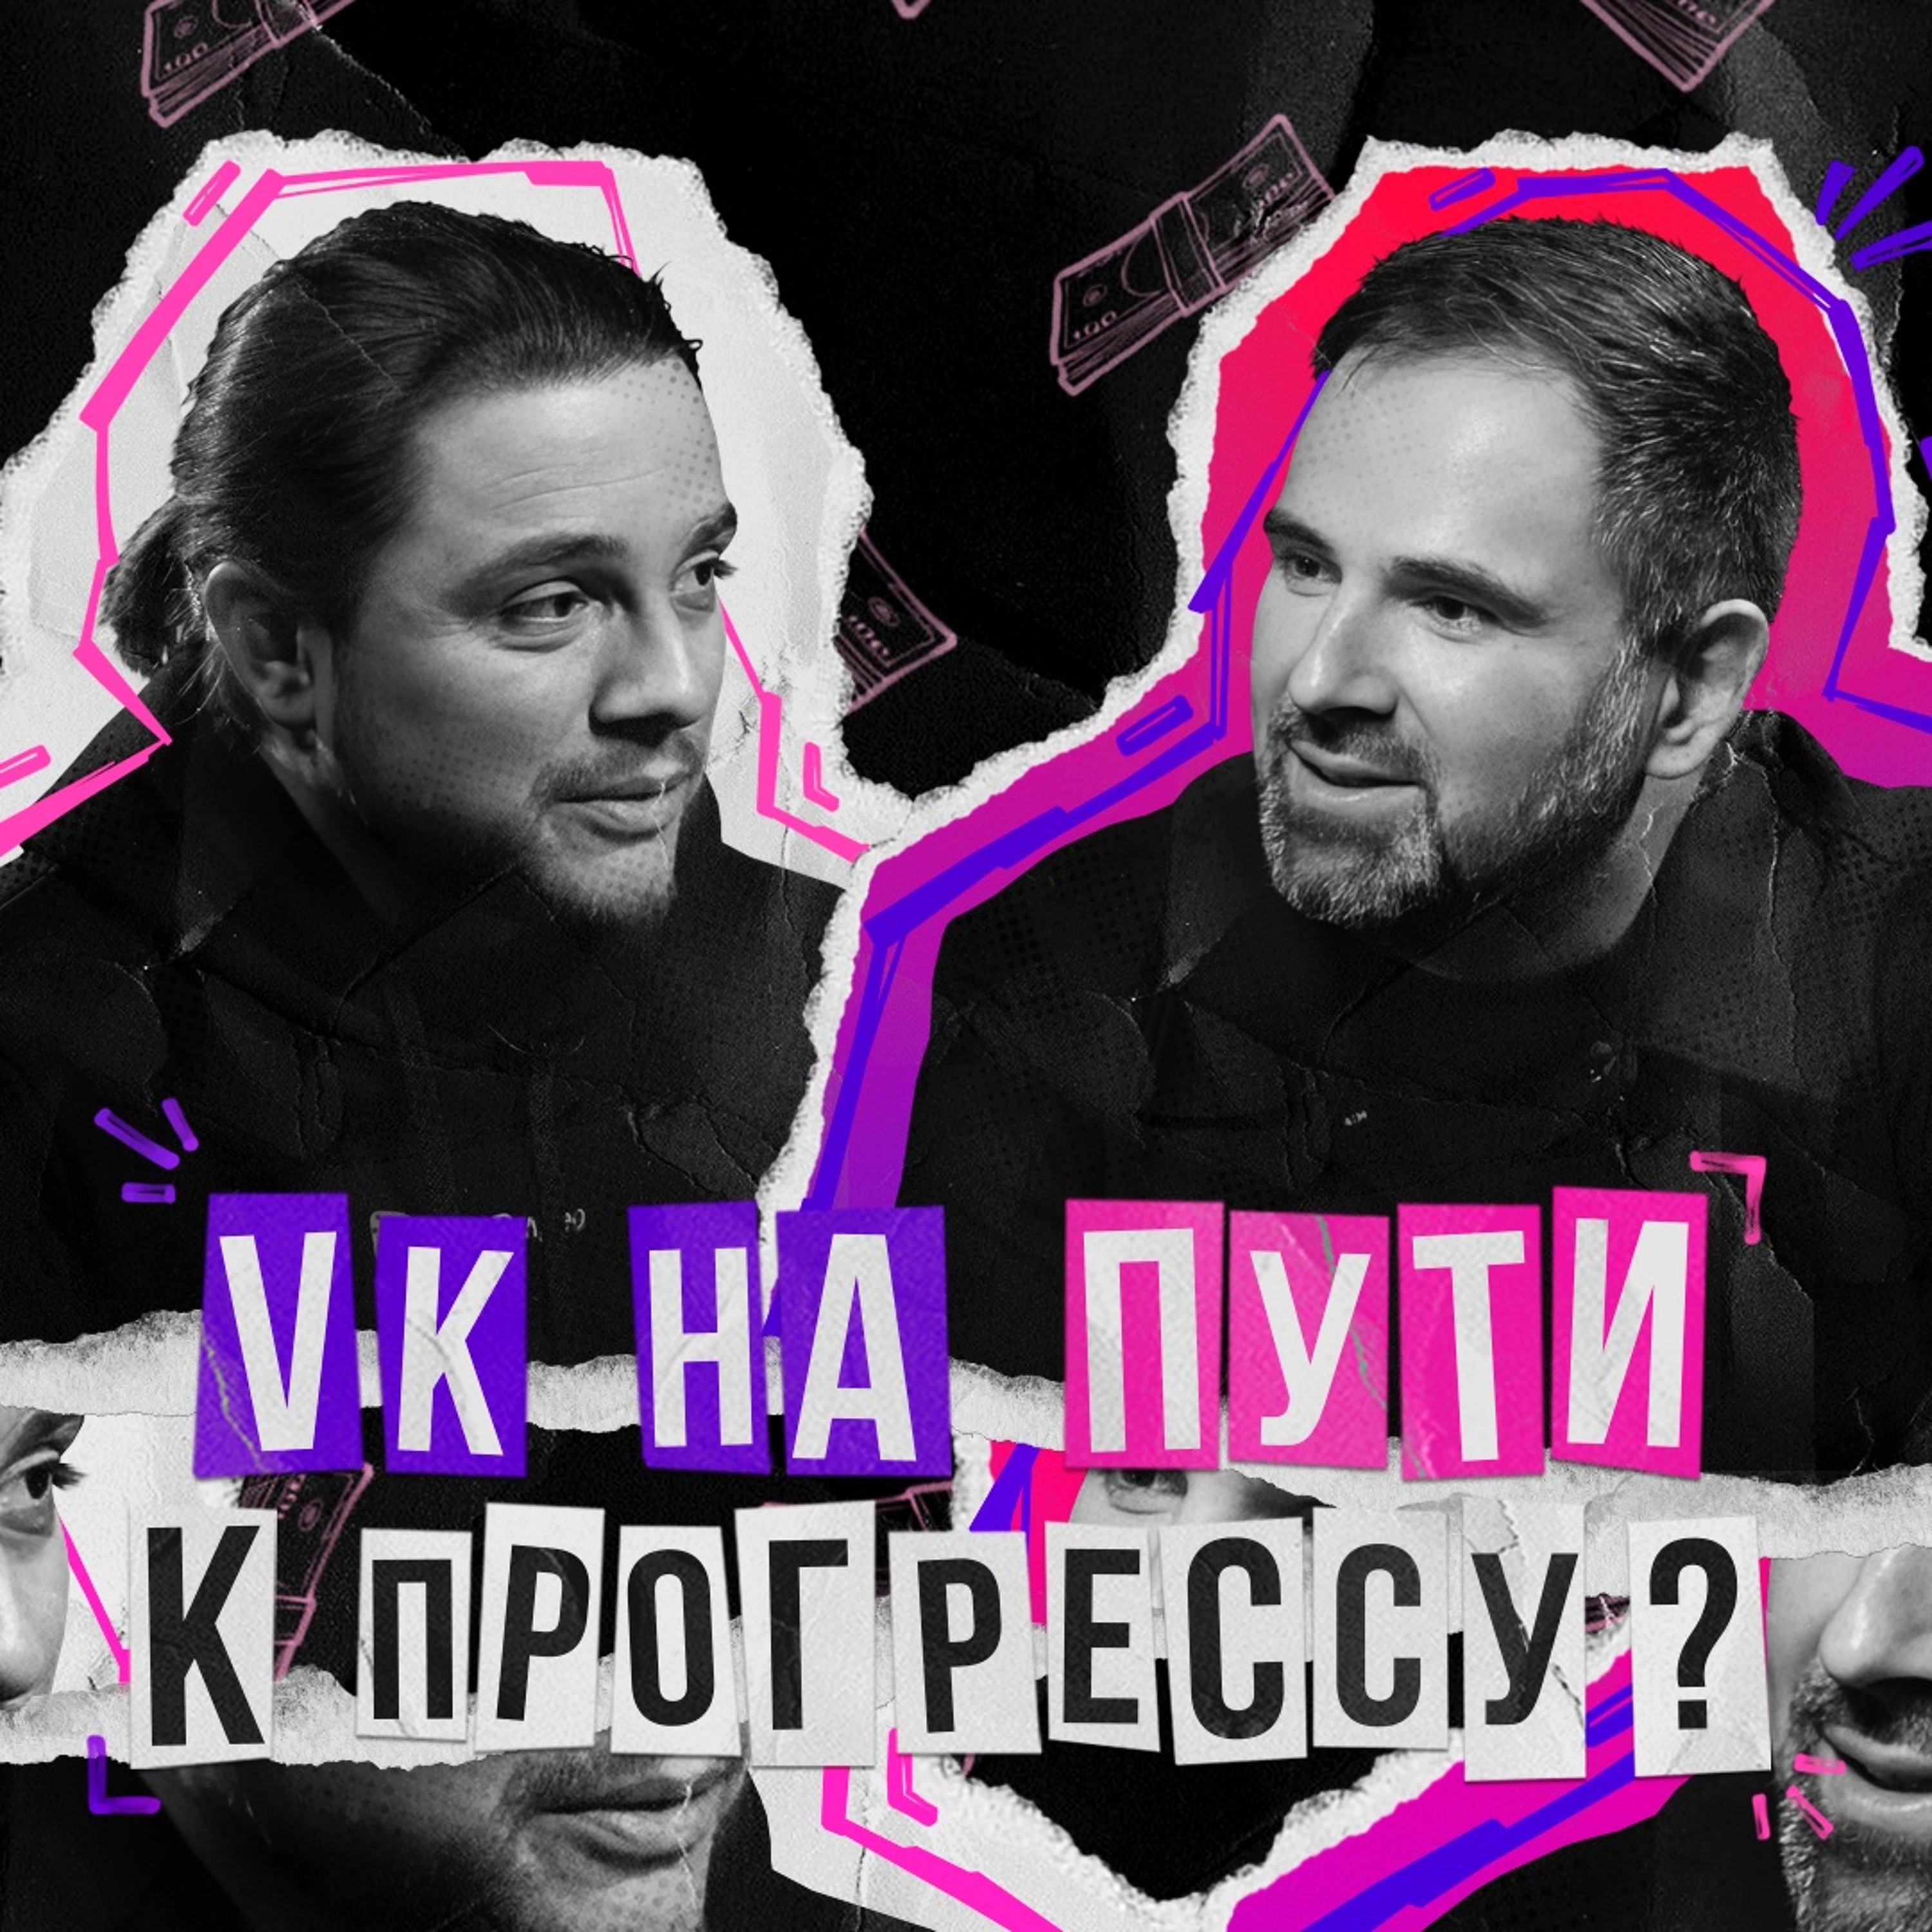 VK на пути к прогрессу: Евгений Фисун о VK, медиа и личностном росте